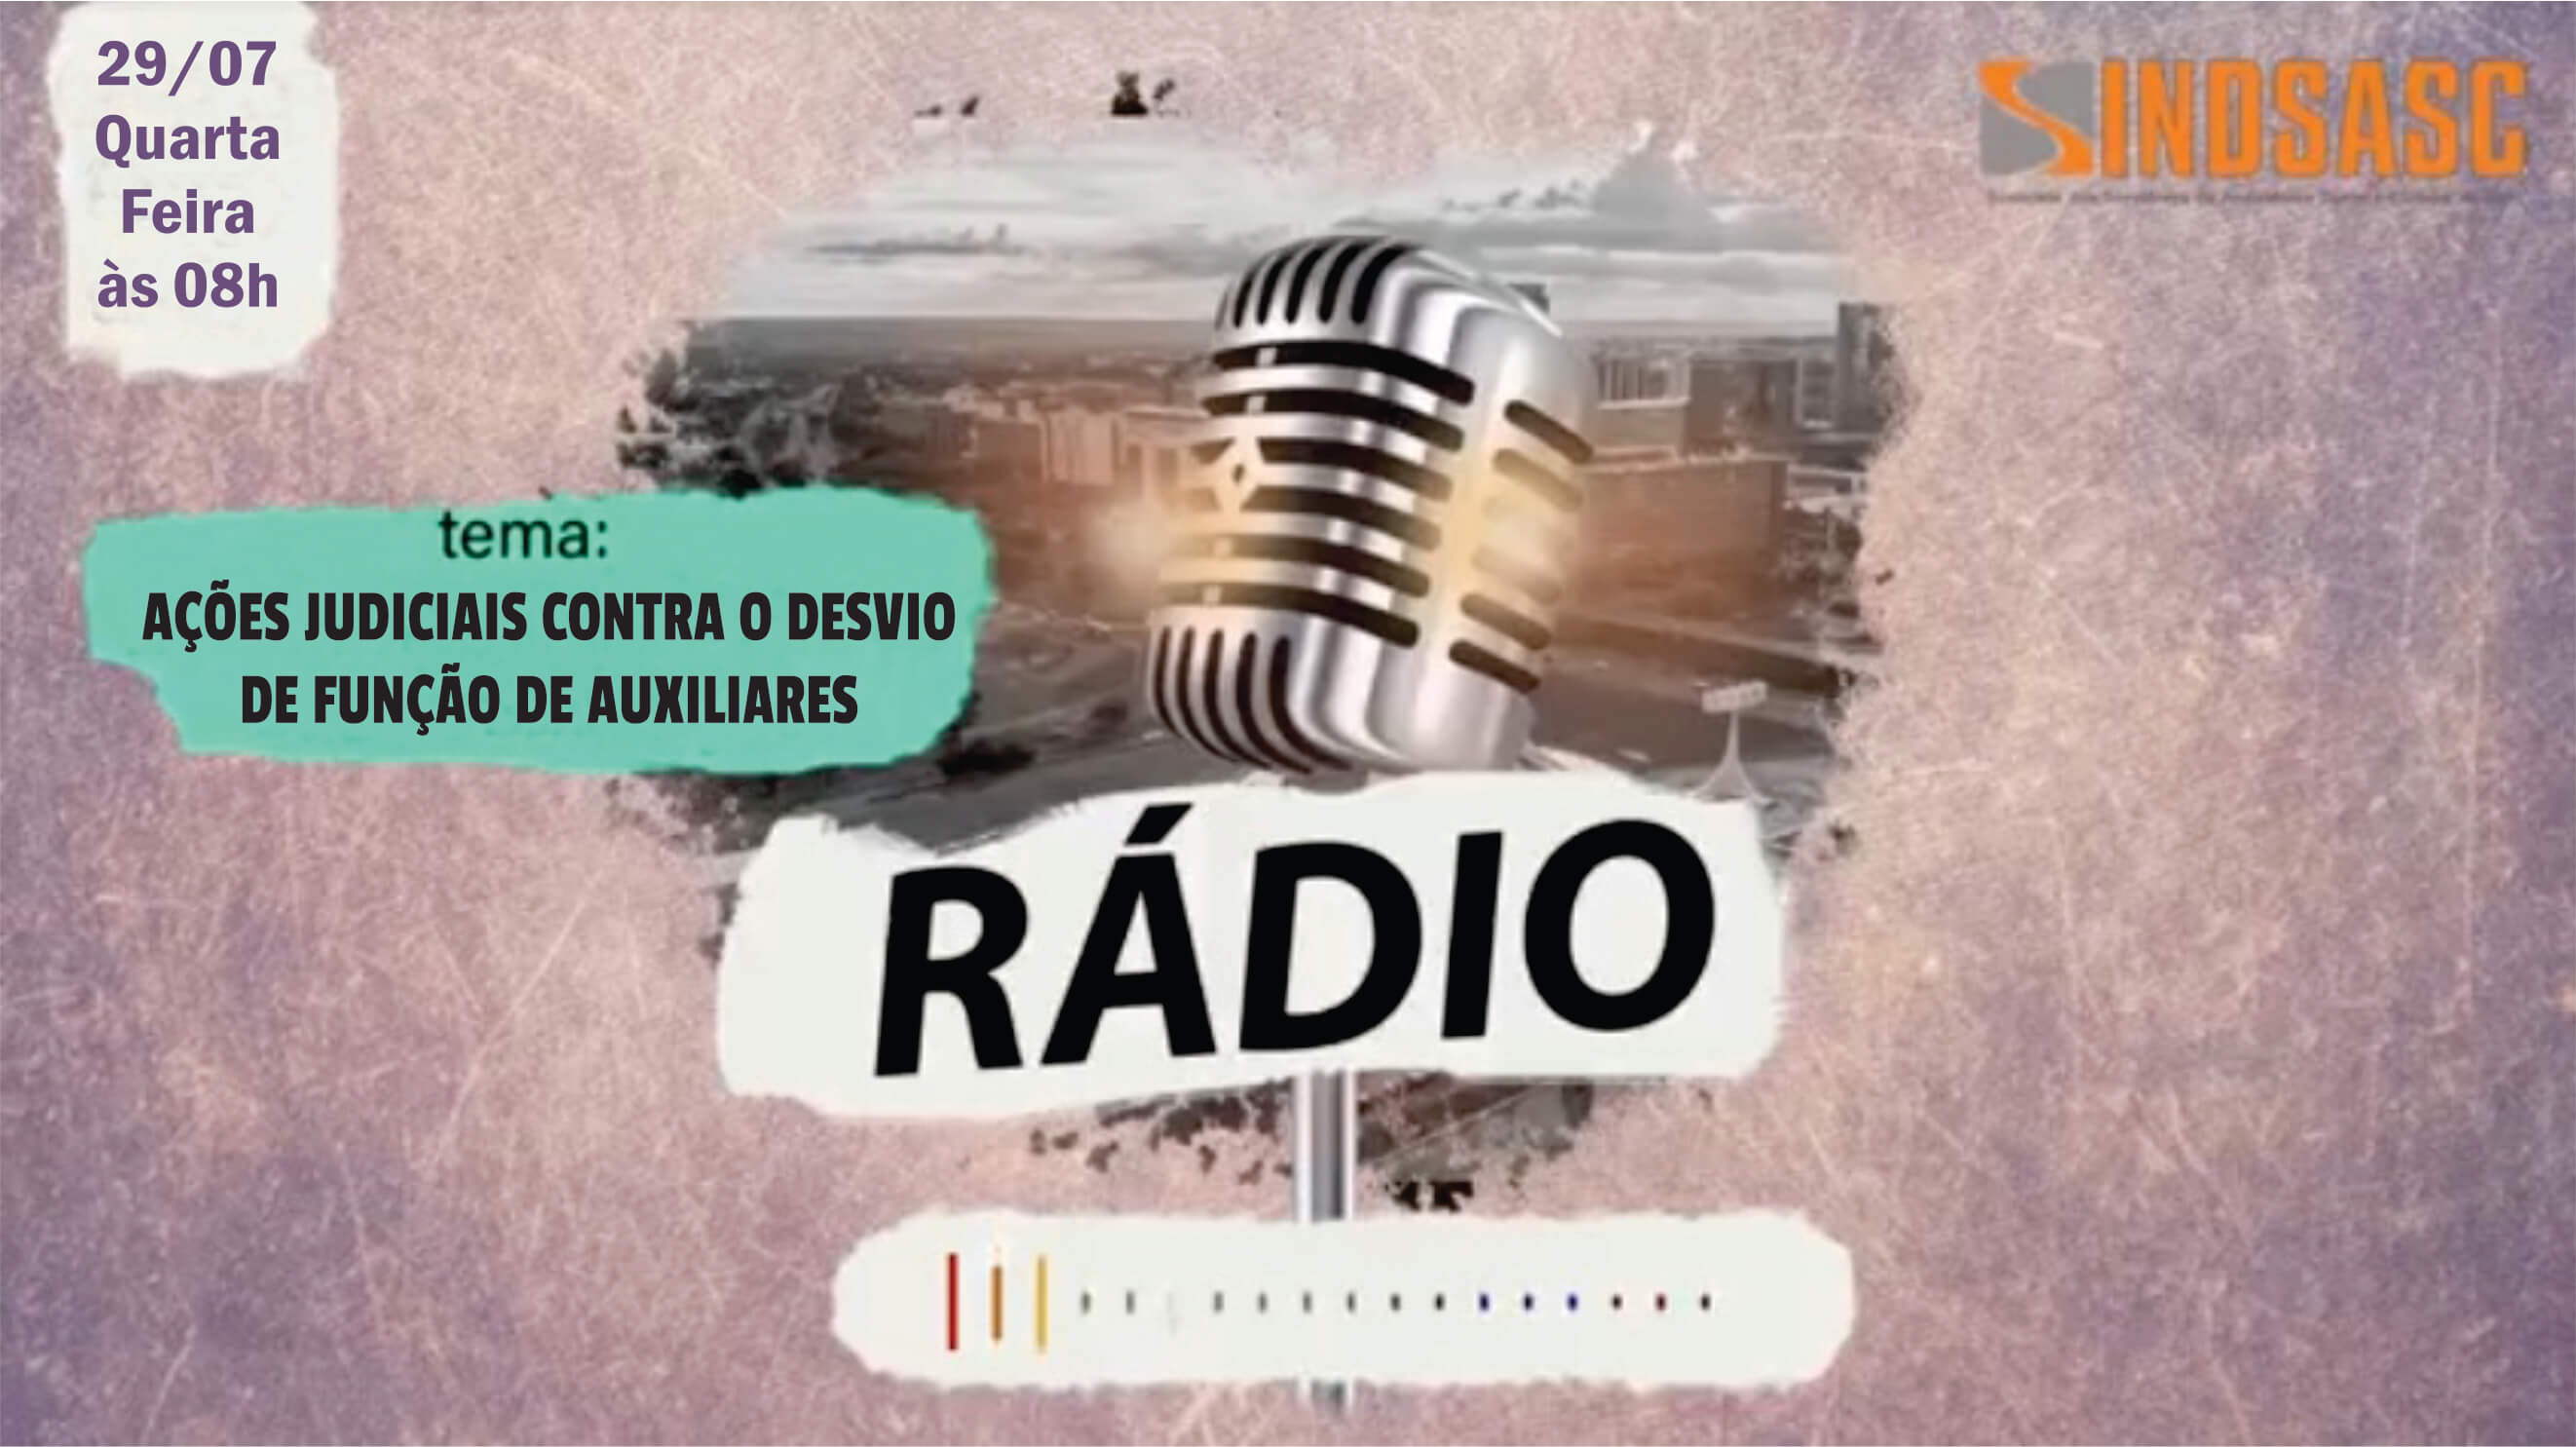 Rádio Sindsasc - Ações Judiciais contra o desvio de função de auxiliares 